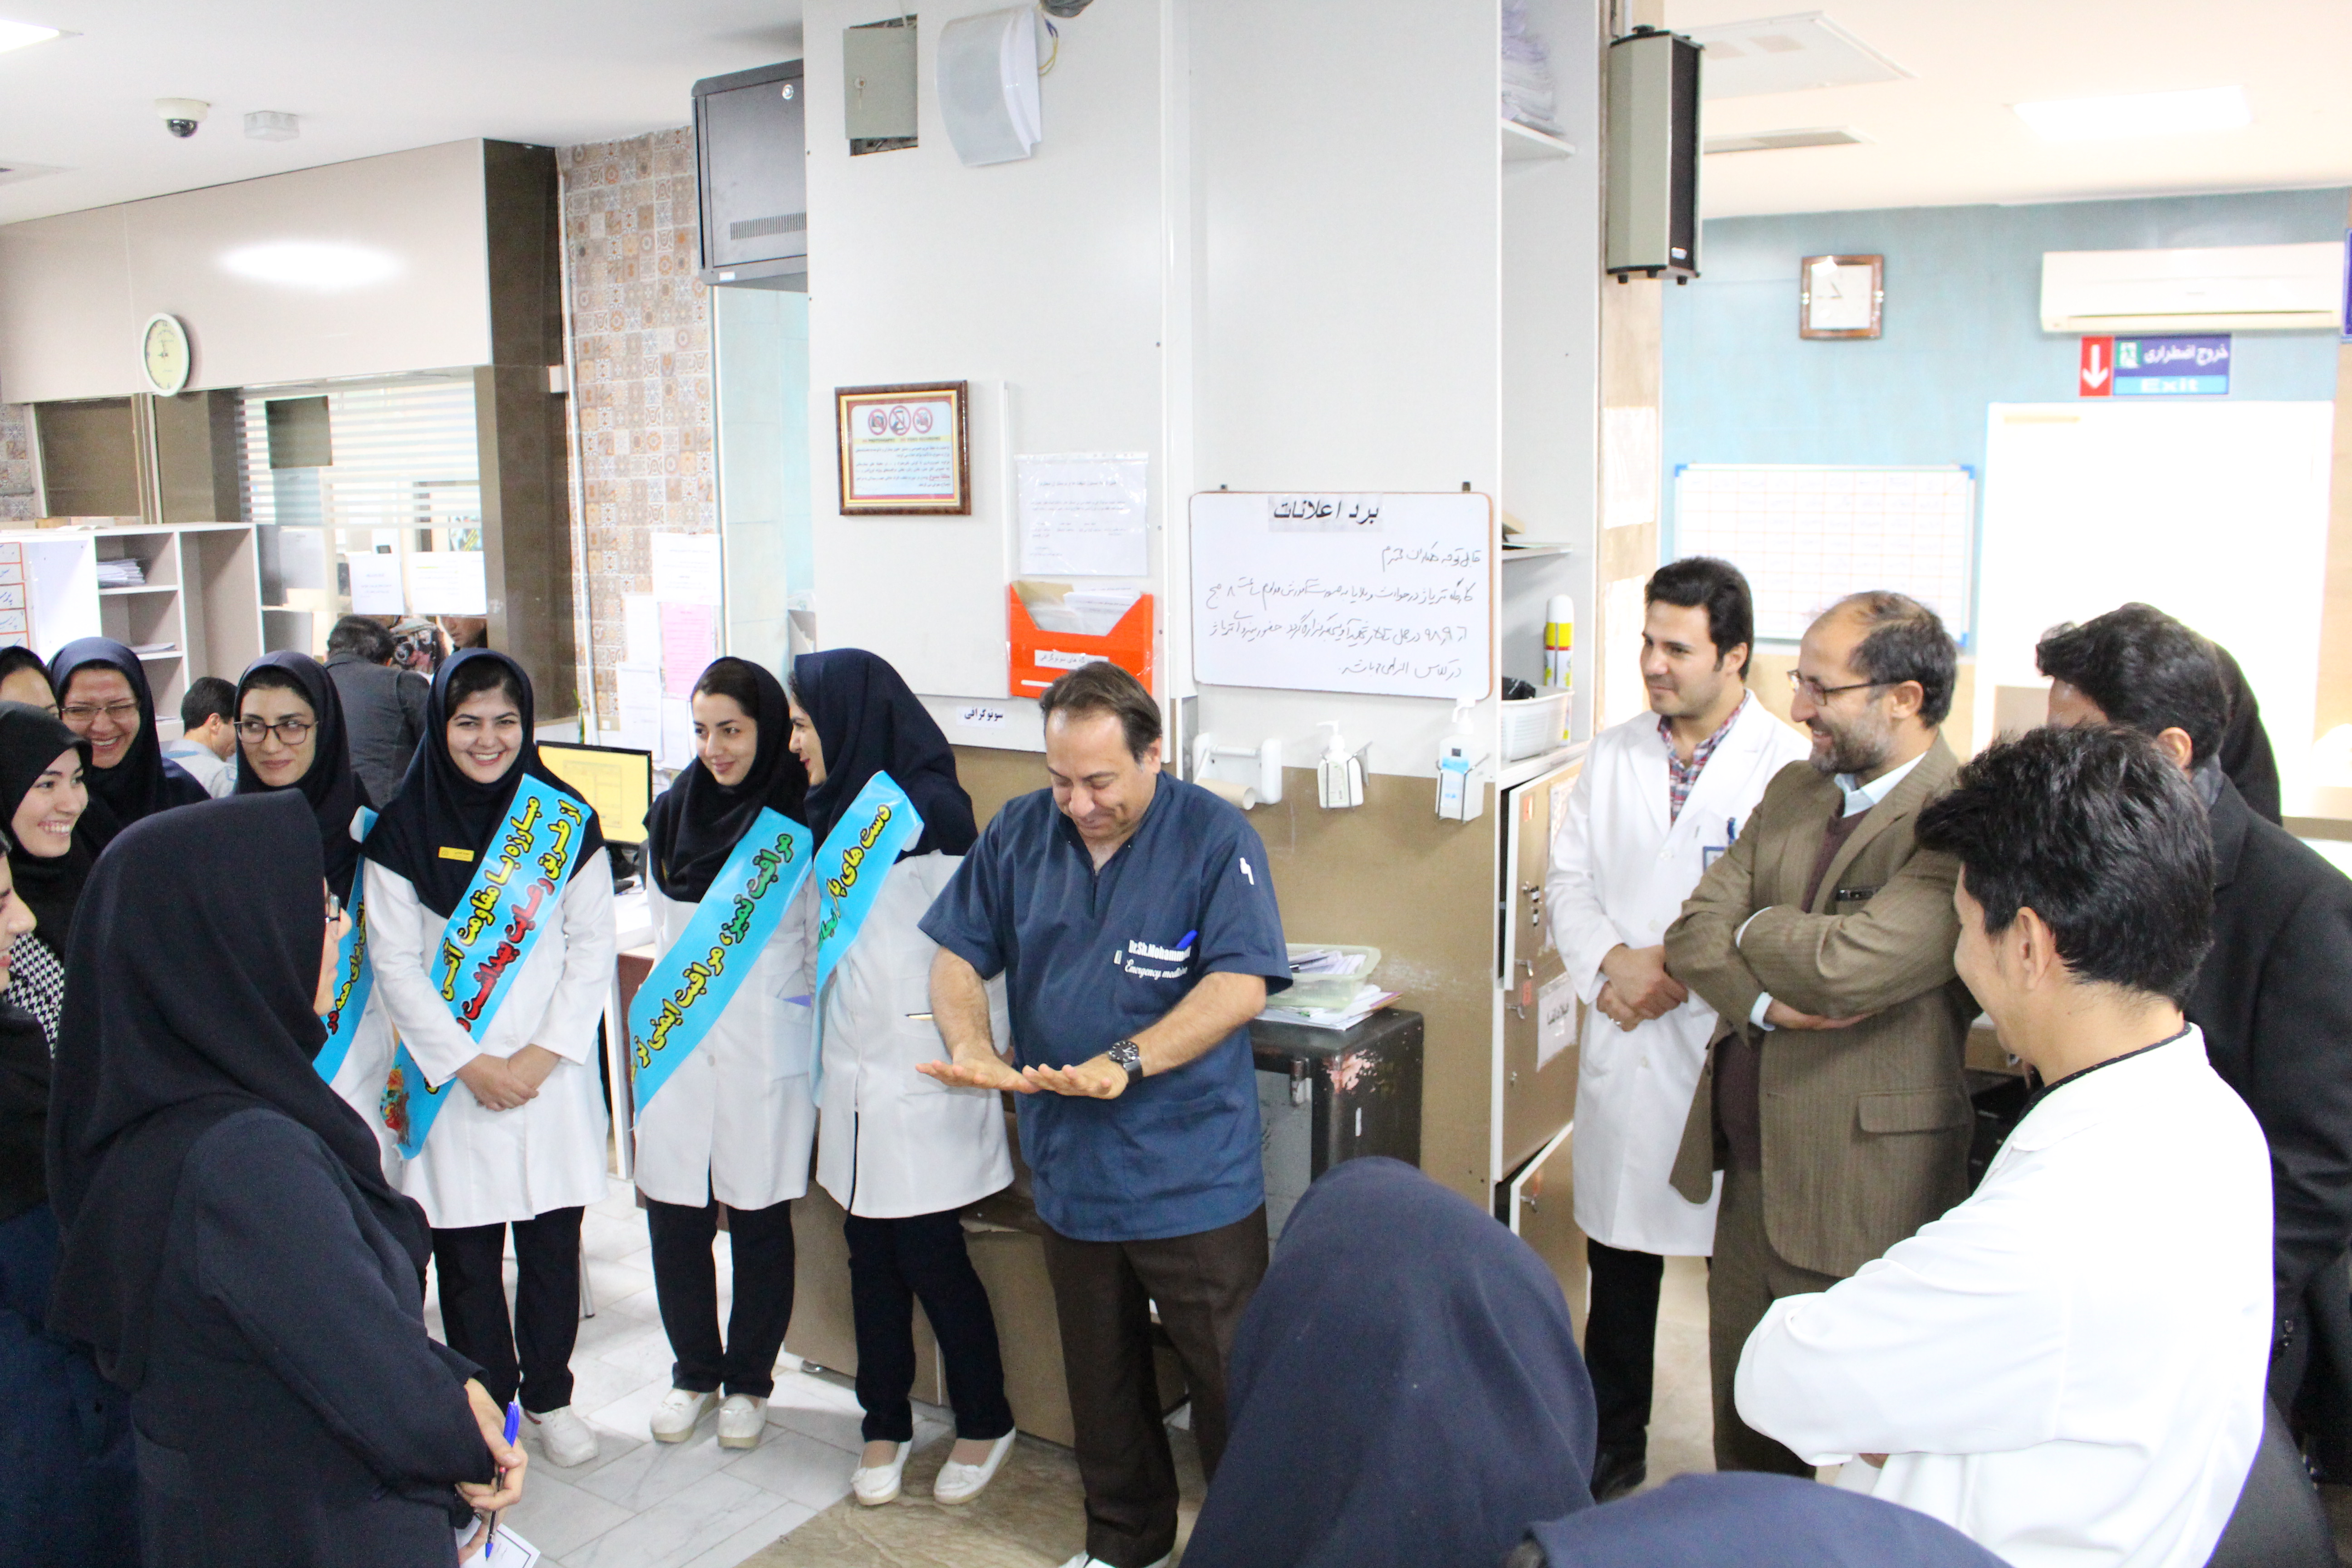 دومین بازدید مدیریتی ارتقاء بهداشت دست در بیمارستان امام علی (ع)